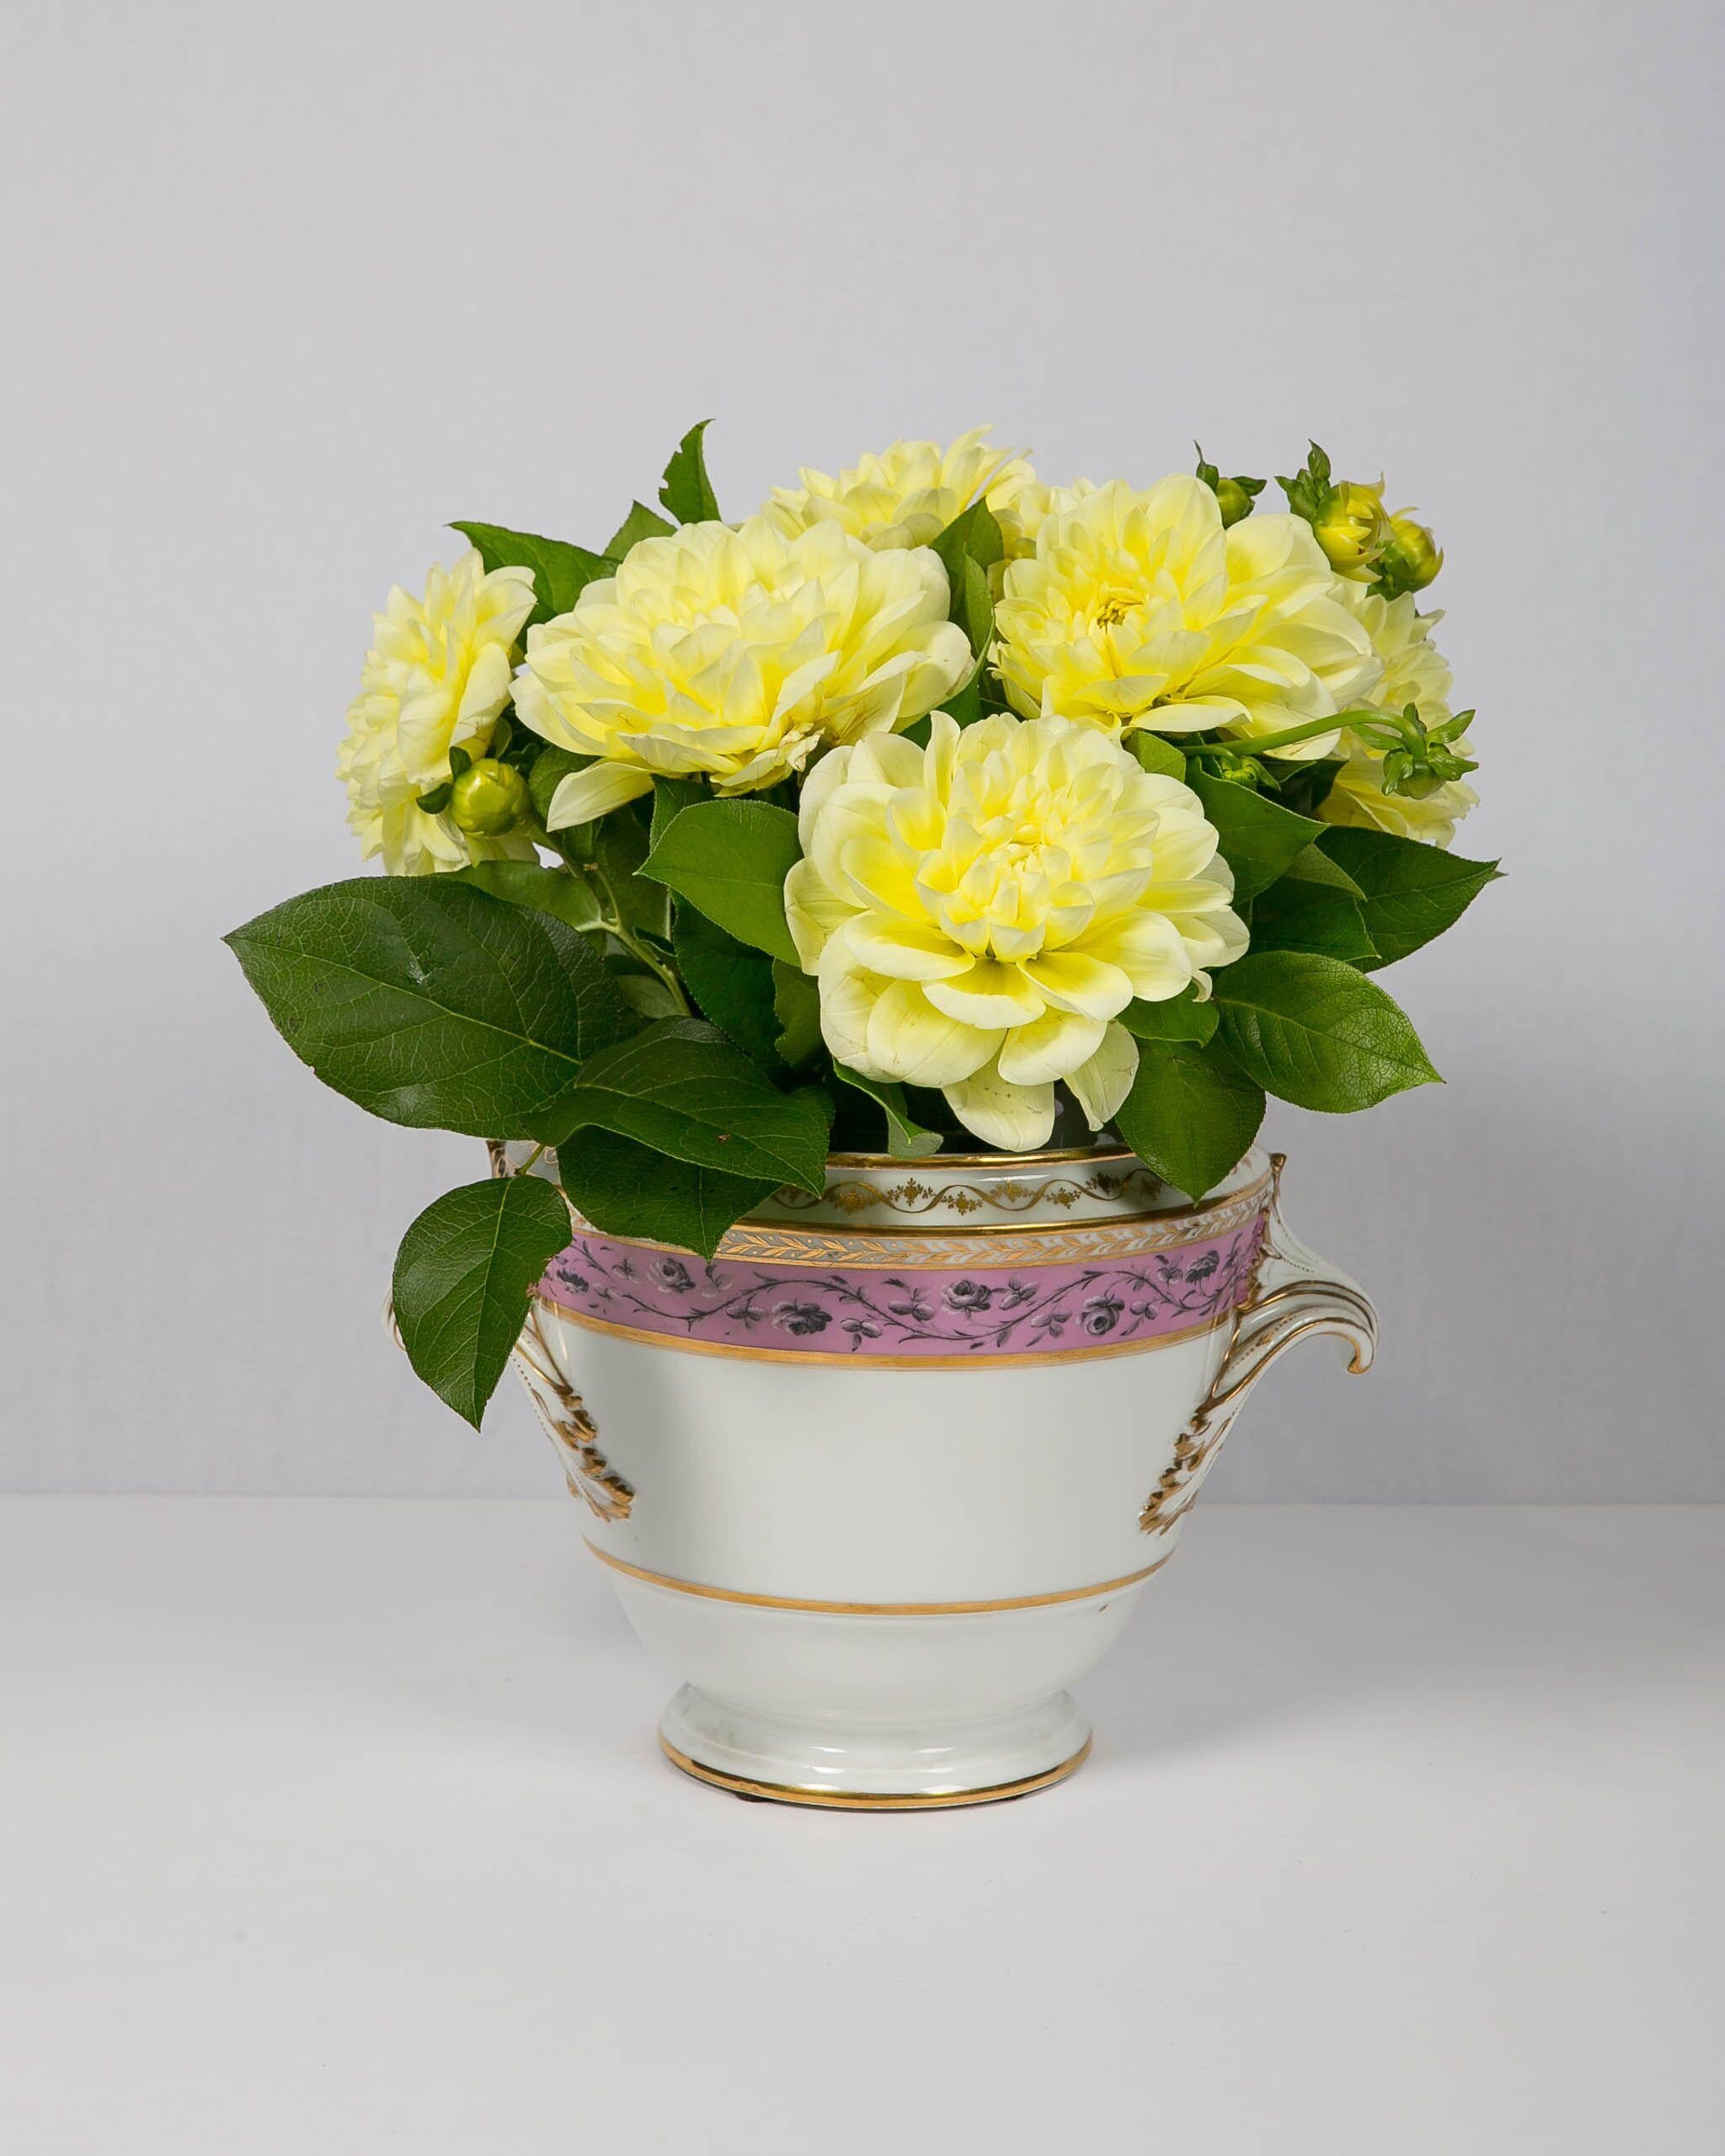 Ein Paar elegante lavendelfarbene Eiskübel aus französischem Porzellan aus dem 18. Jahrhundert:: bemalt mit Rosen in Grisaille innerhalb breiter lavendelfarbener Streifen. Die Eiskübel haben aufwändig vergoldete Griffe und vergoldete Ananas-Finials.